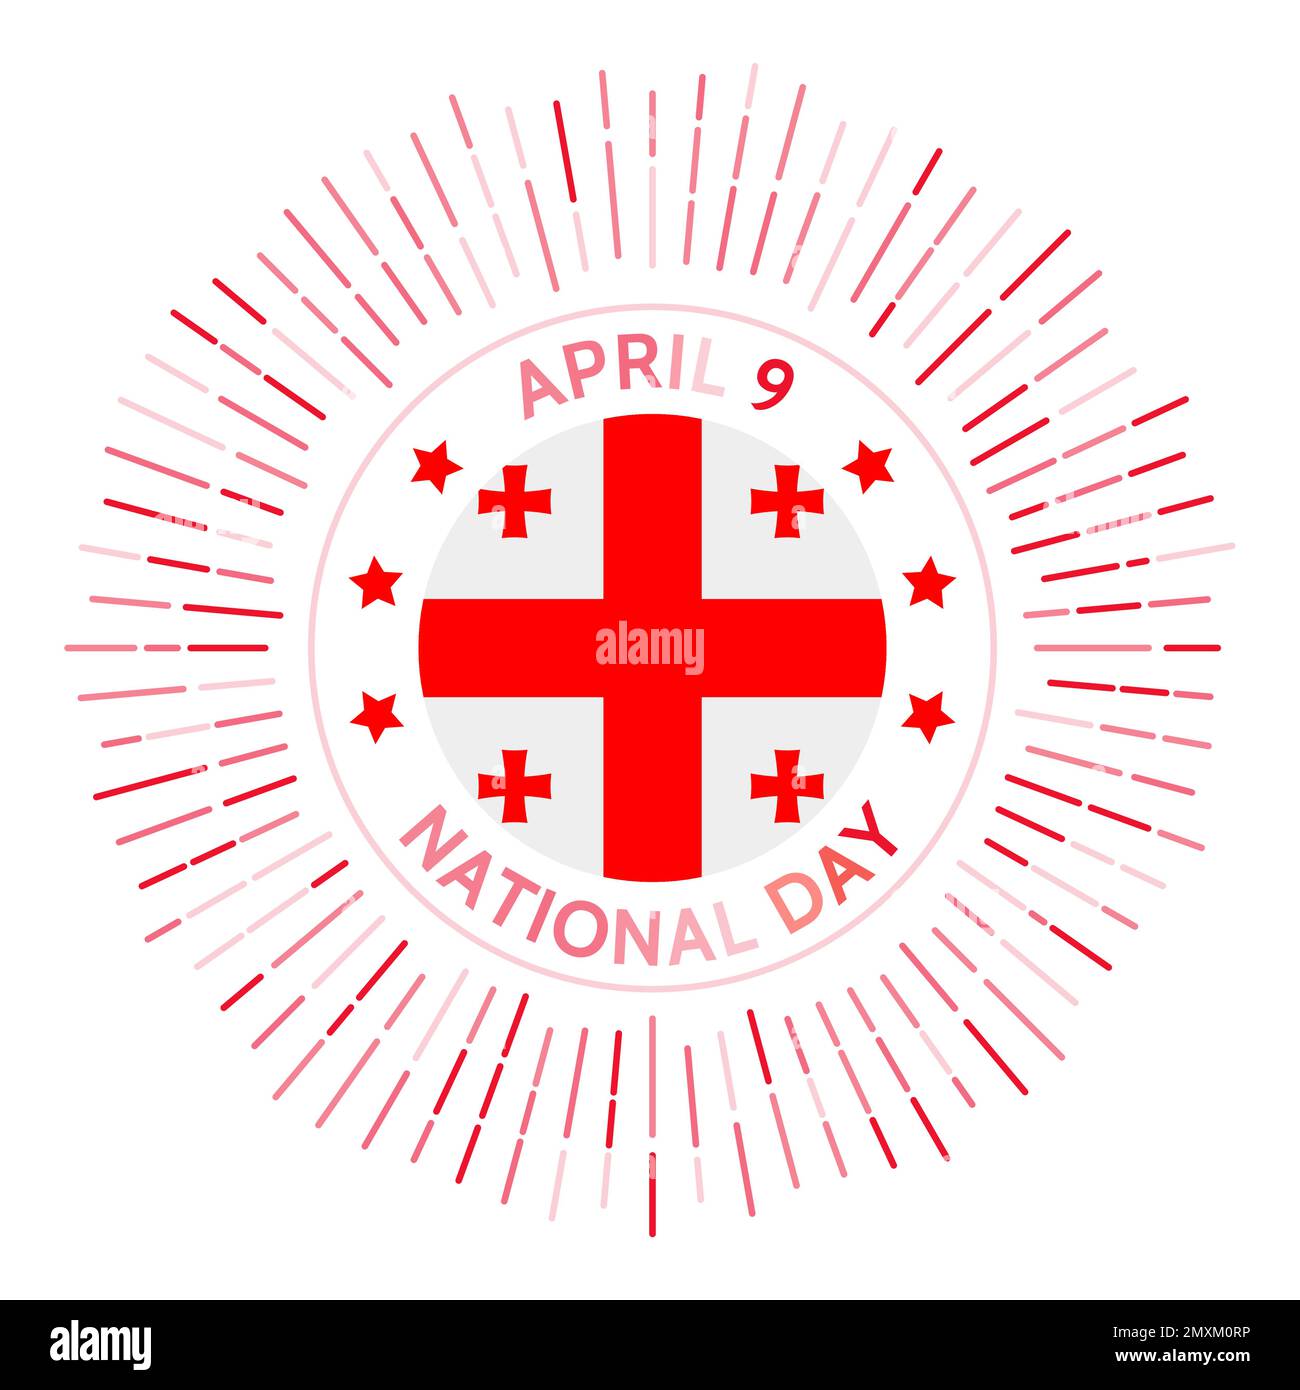 Georgia National Day Abzeichen. Unabhängigkeit von der Sowjetunion 1991. Gefeiert am 9. April. Stock Vektor